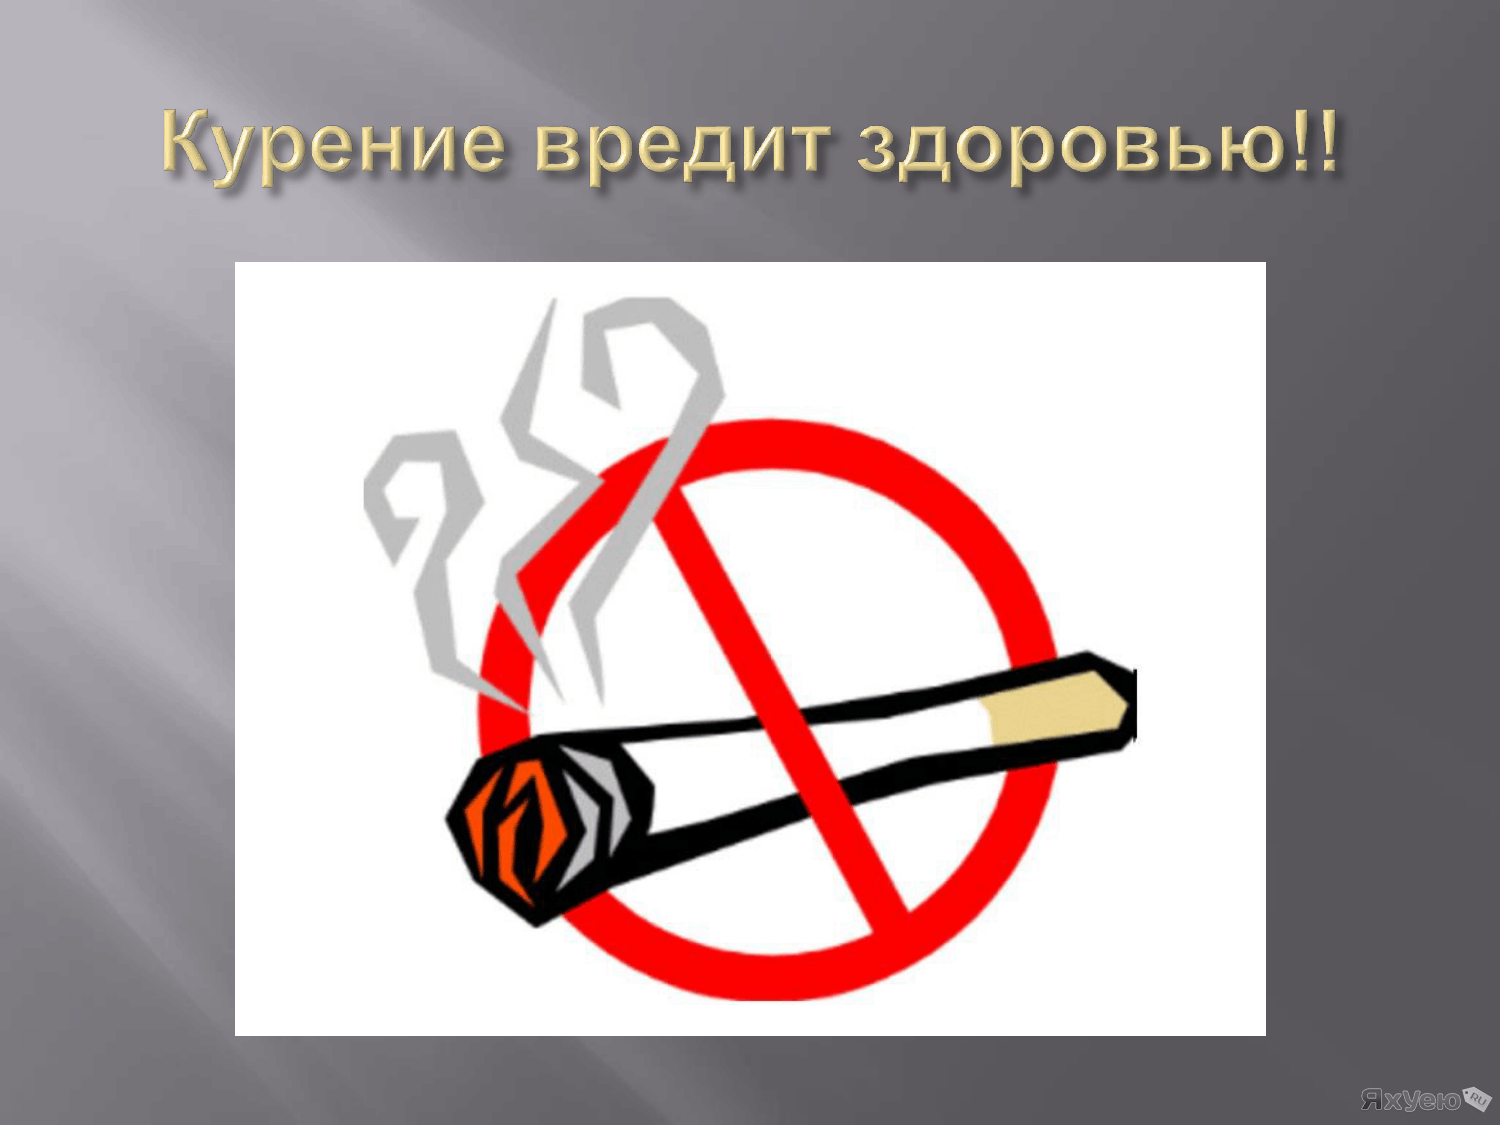 Часы вред для здоровья. Курение вредит здоровью. Курить здоровью вредить. Парение вредит здоровью. Курить вредно для здоровья.